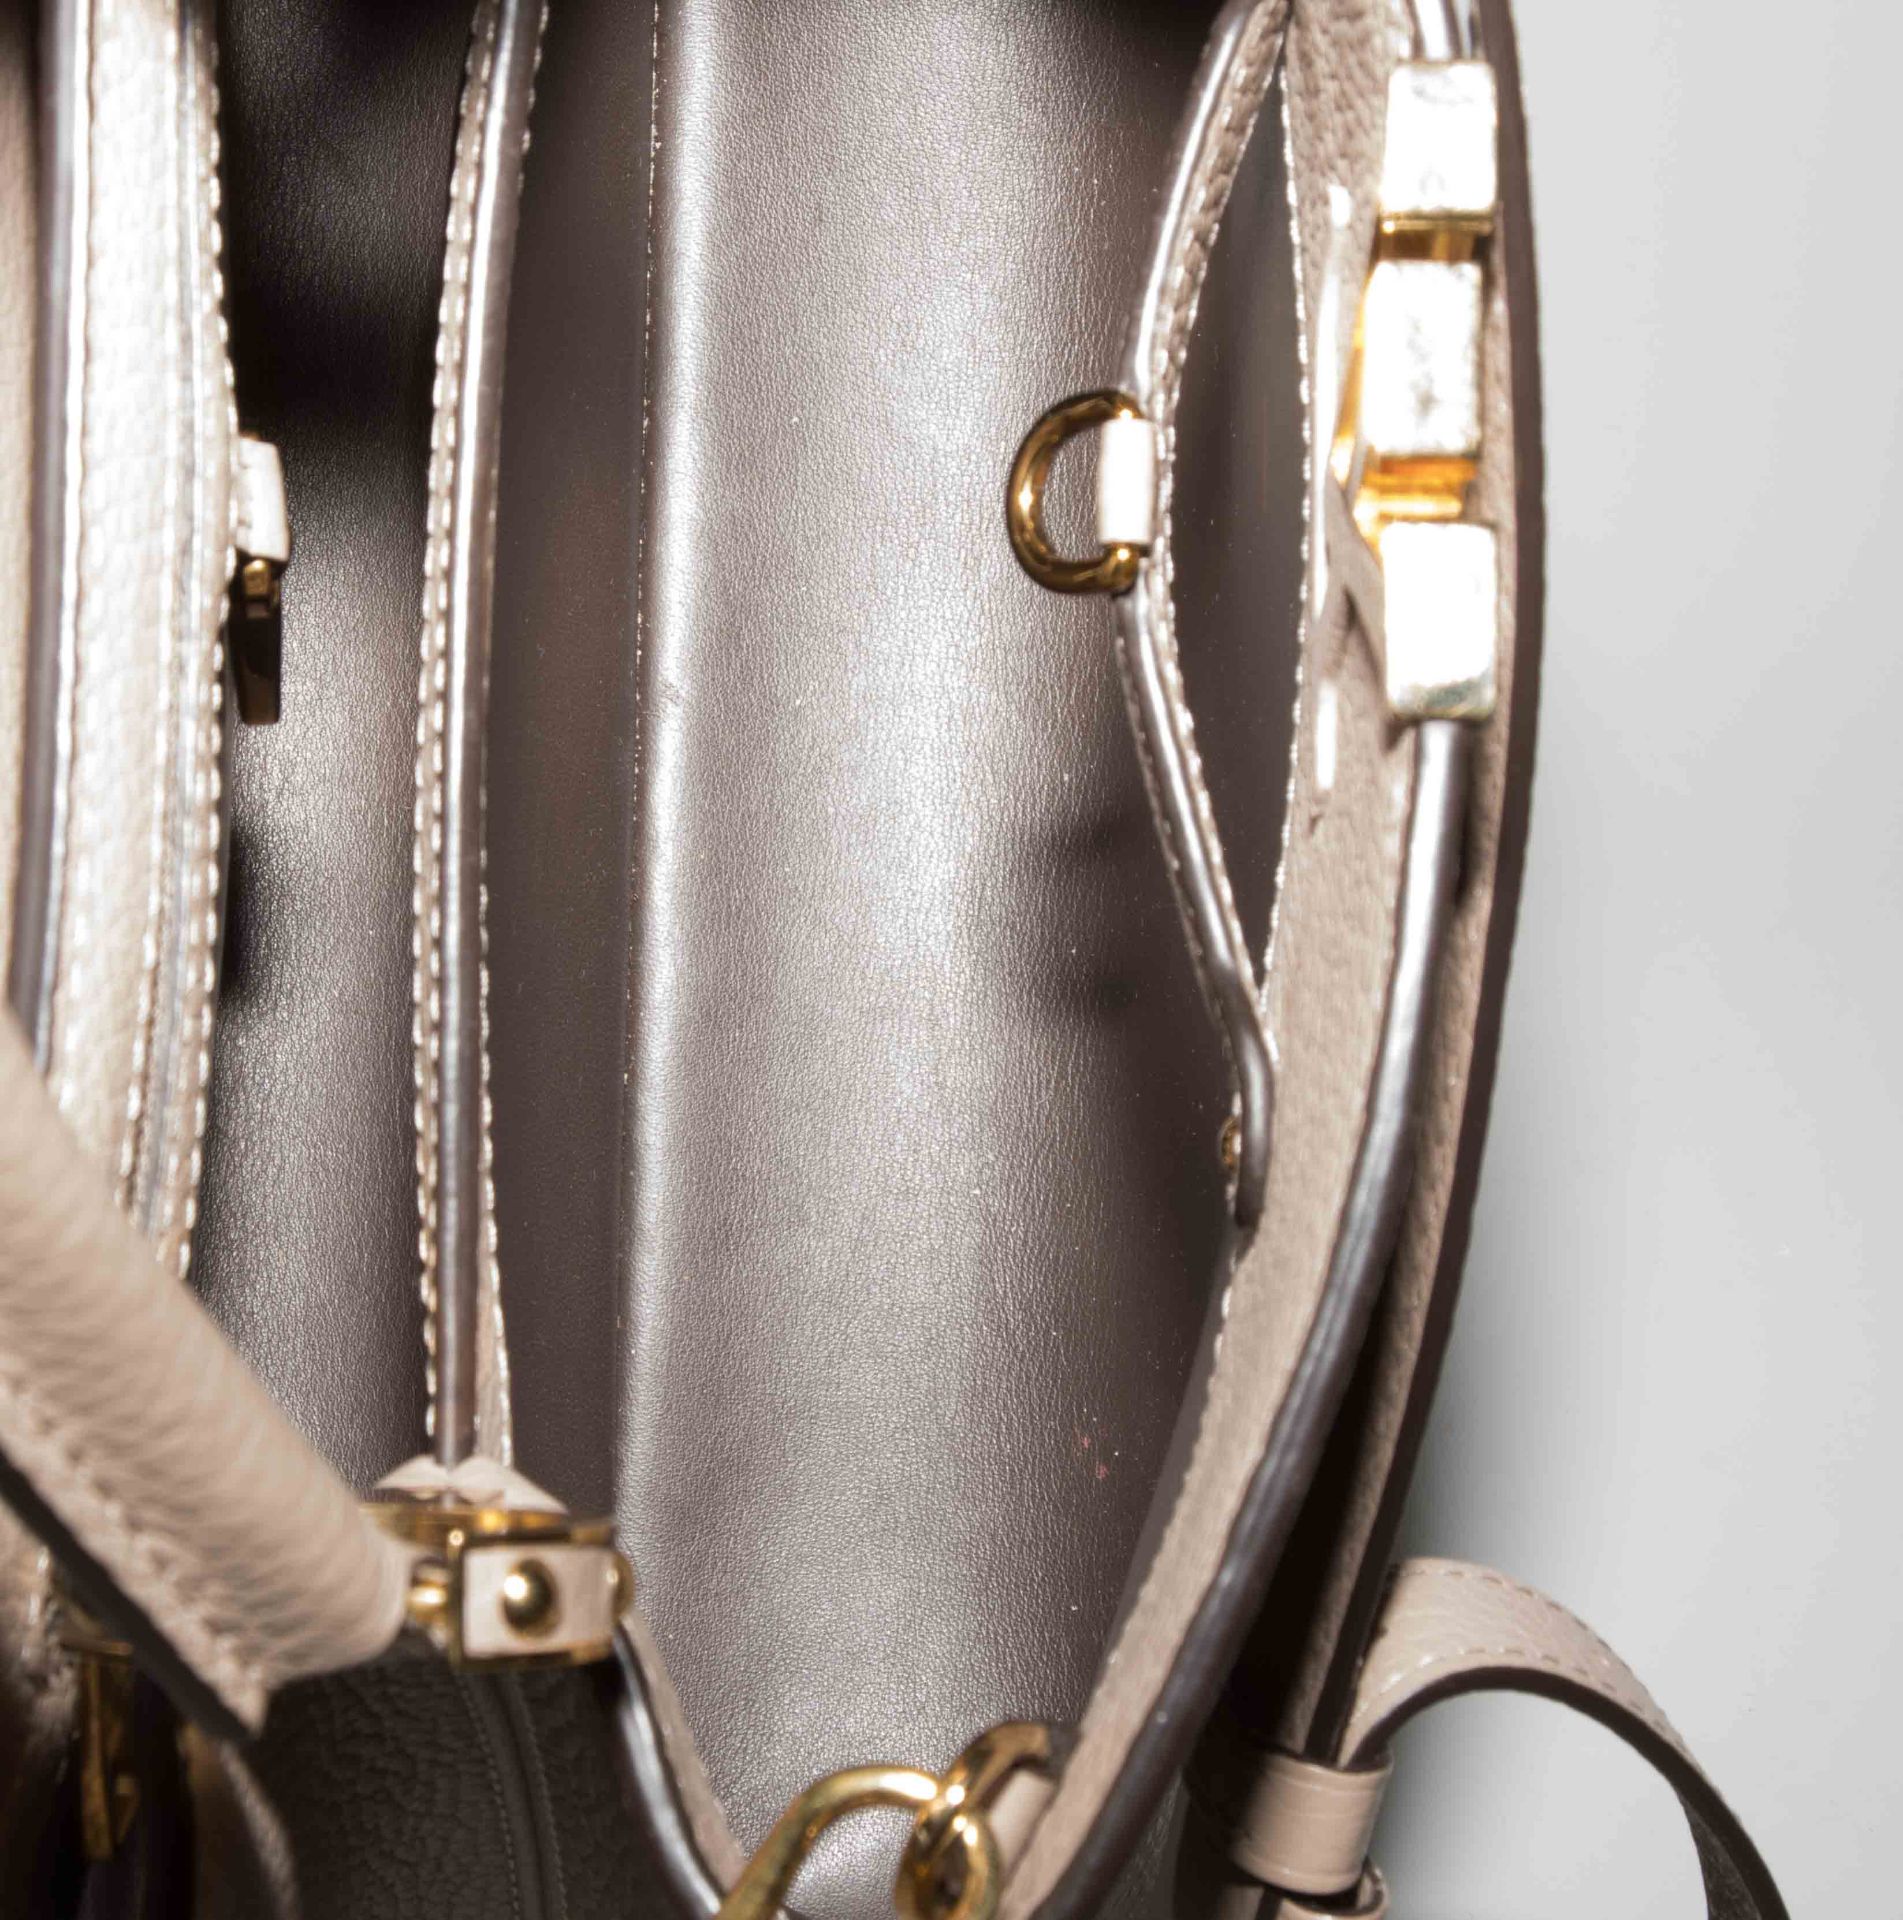 Louis Vuitton, Handtasche "Capucines" - Image 14 of 17